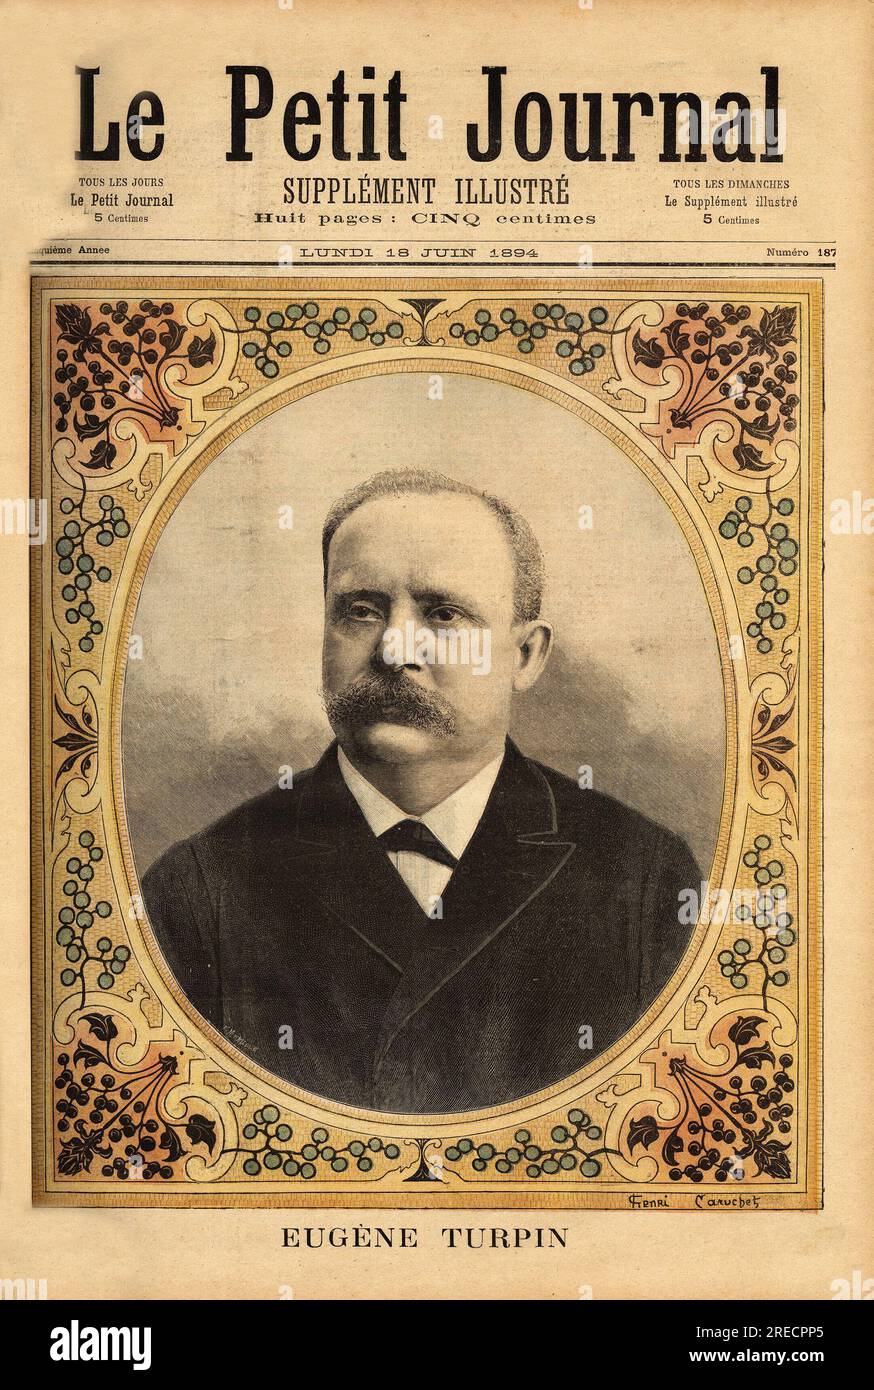 Portrait d'Eugene Turpin (1848-1927), chimiste specialise dans les explosifs, ( inventeur en 1884 de la melinite ), injustement accuse d'avoir vendu ses inventions a l'ennemi, il est la source d'inpiration pour le personnage de Thomas Roch dans le roman 'Face au drapeau' de Jules Verne (1828-1905). Gravure in 'Le petit journal' 18061894. Stock Photo